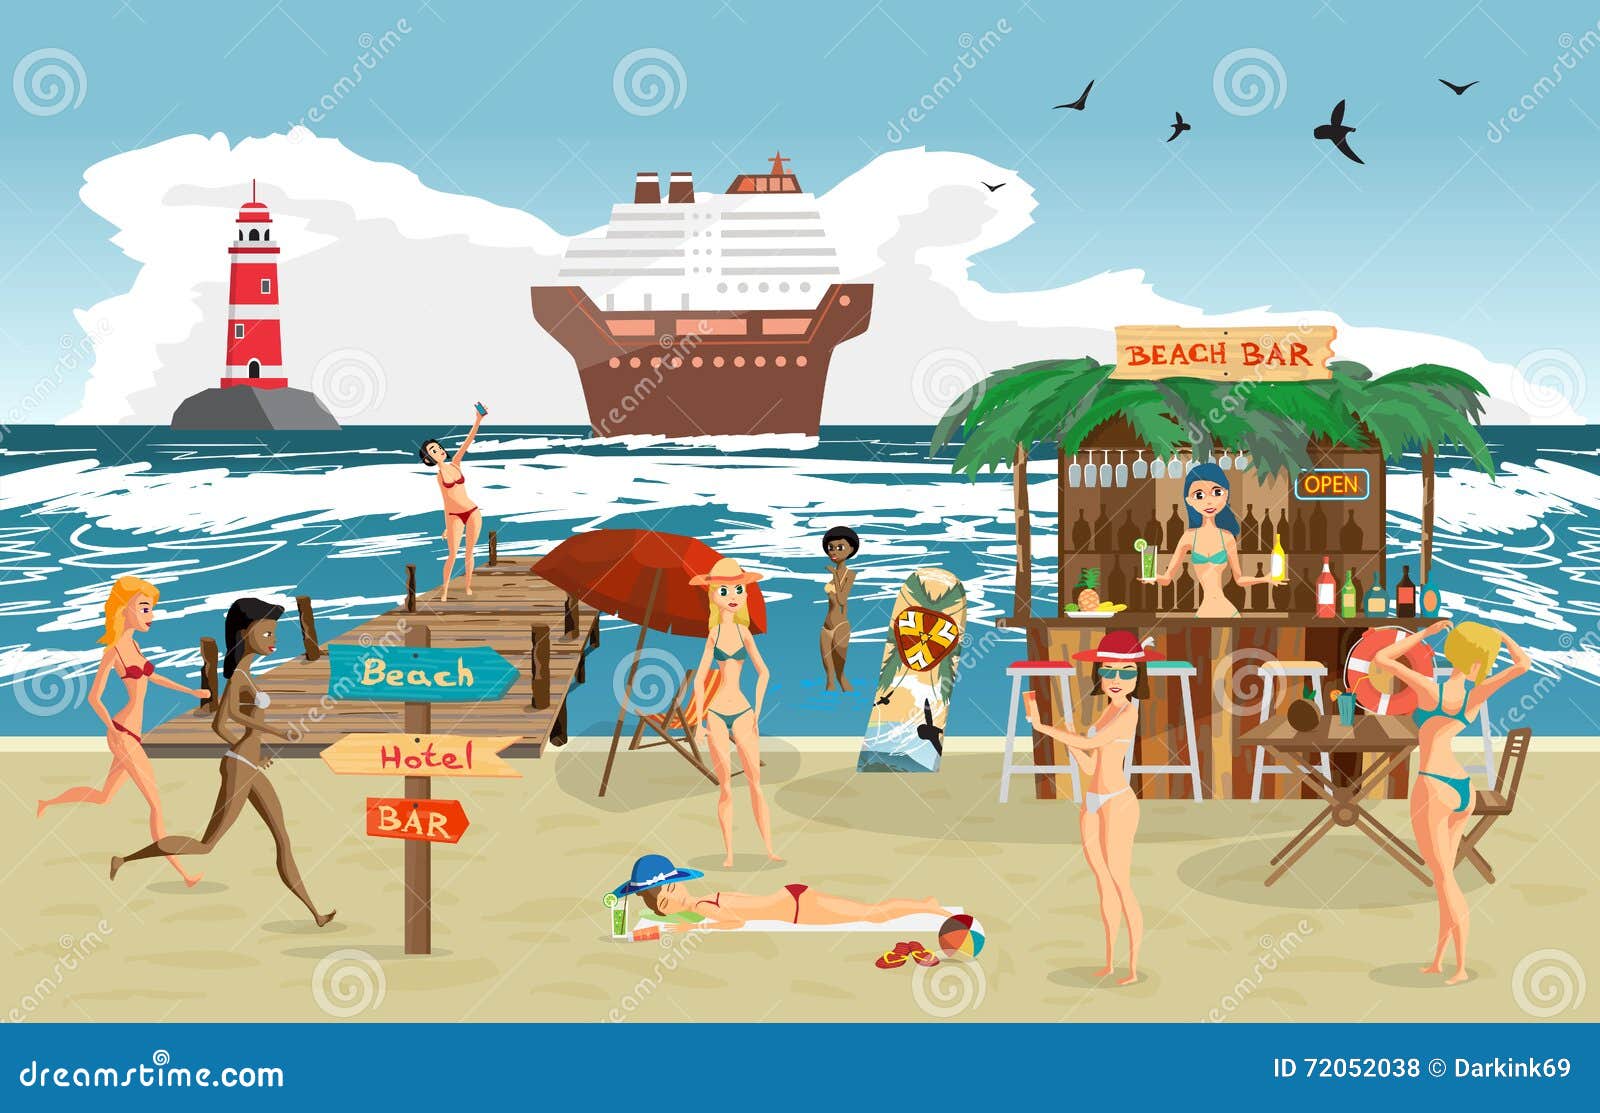 Пляжный бар иллюстрация